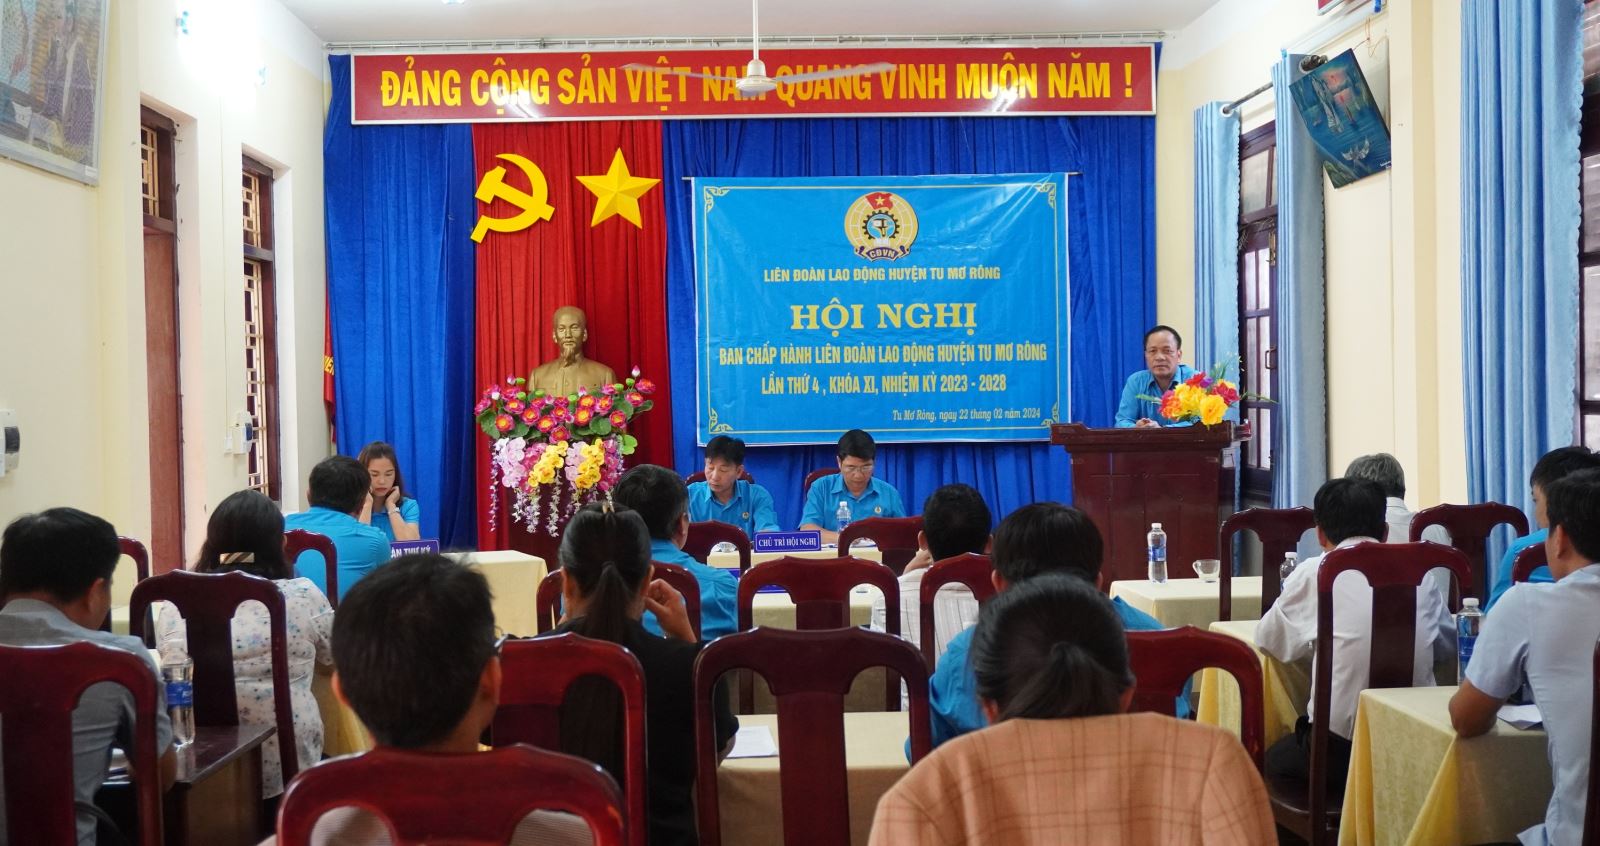 Hội nghị Ban Chấp hành Liên đoàn Lao động huyện Tu Mơ Rông lần thứ 4, khoá XI, nhiệm kỳ 2023-2028